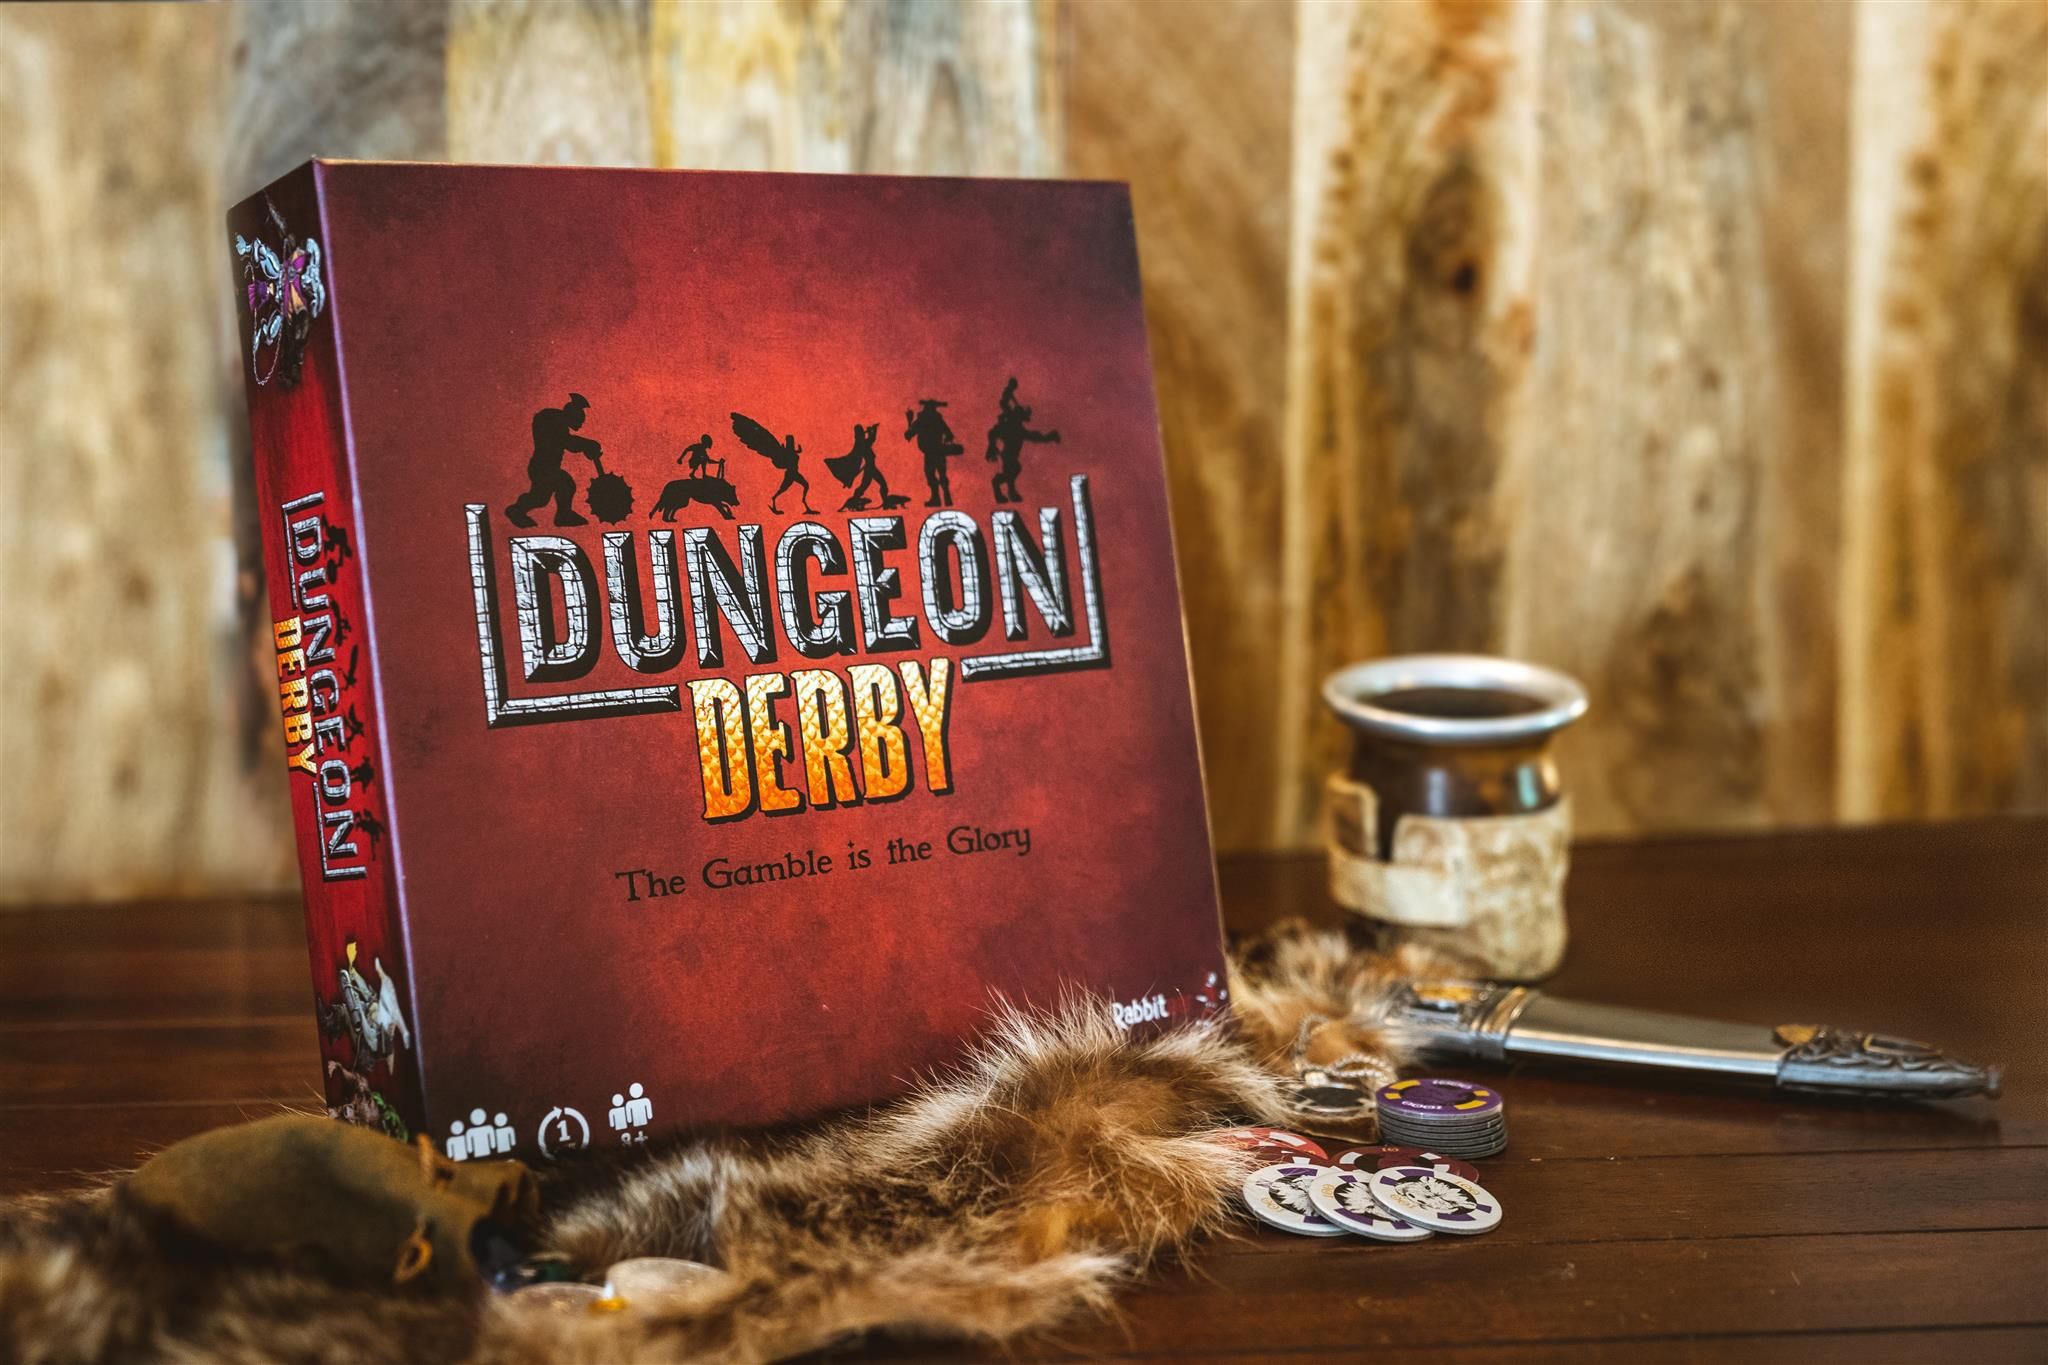 Dungeon Derby